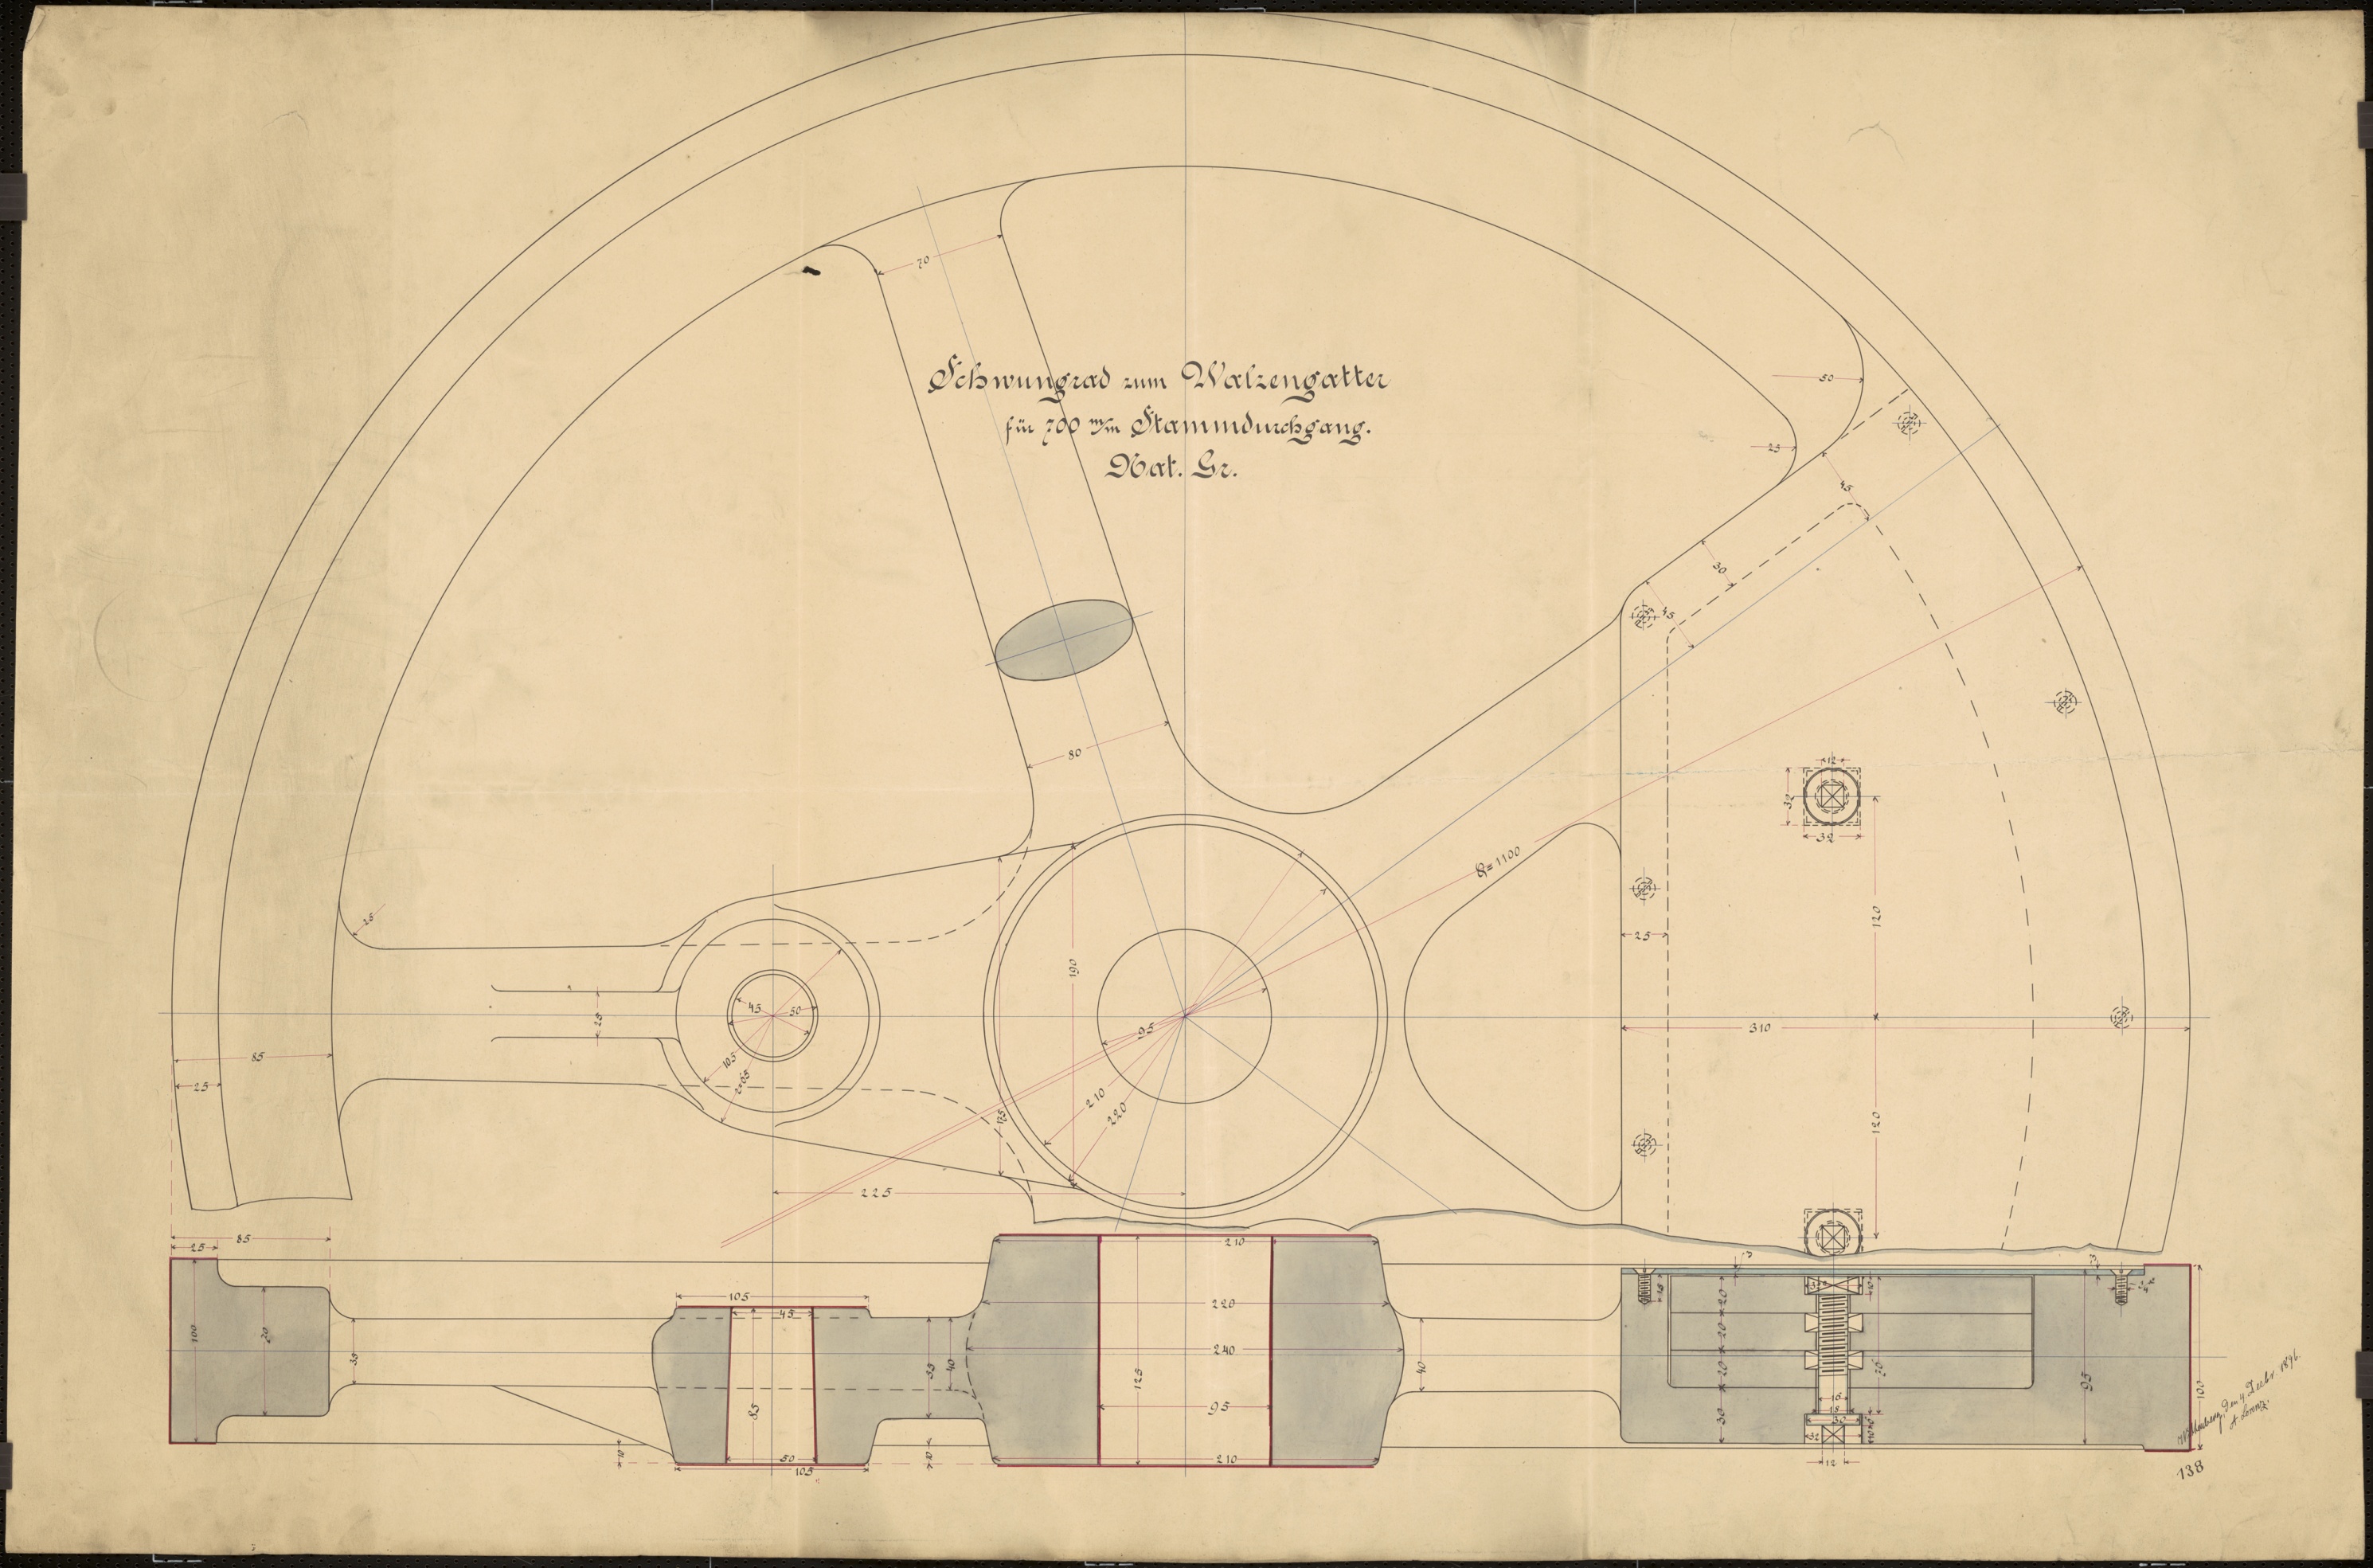 Technische Zeichnung : Schwungrad zum Walzengatter für 700 mm Stammdurchgang (Stiftung Deutsches Technikmuseum Berlin CC BY-SA)